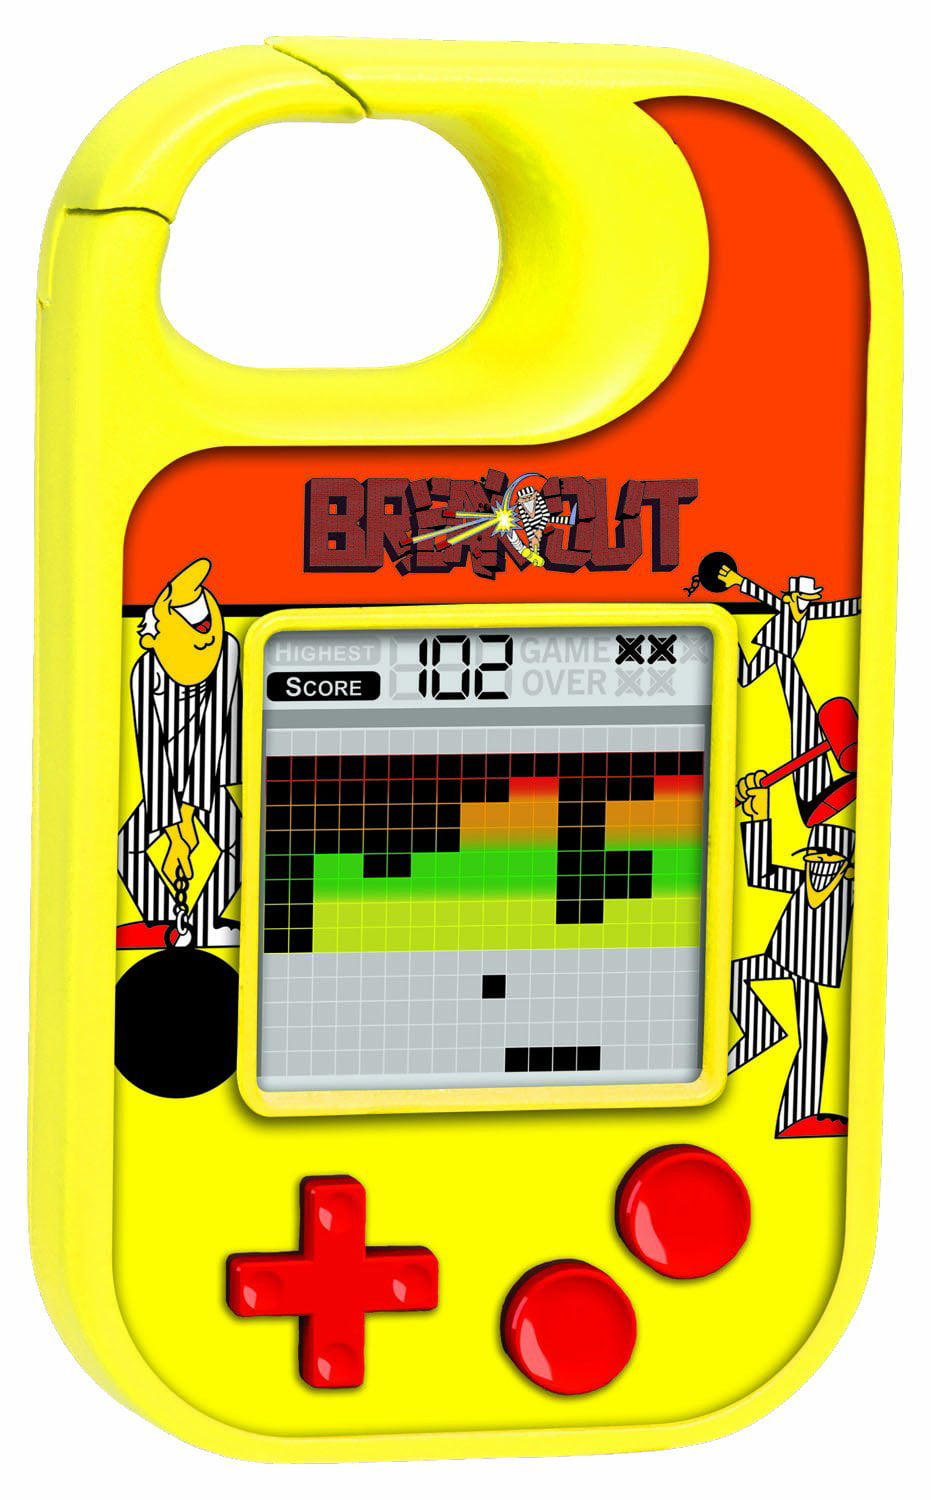 Atari BREAKOUT Handheld Electronic Arcade Game Basic Fun NEW 